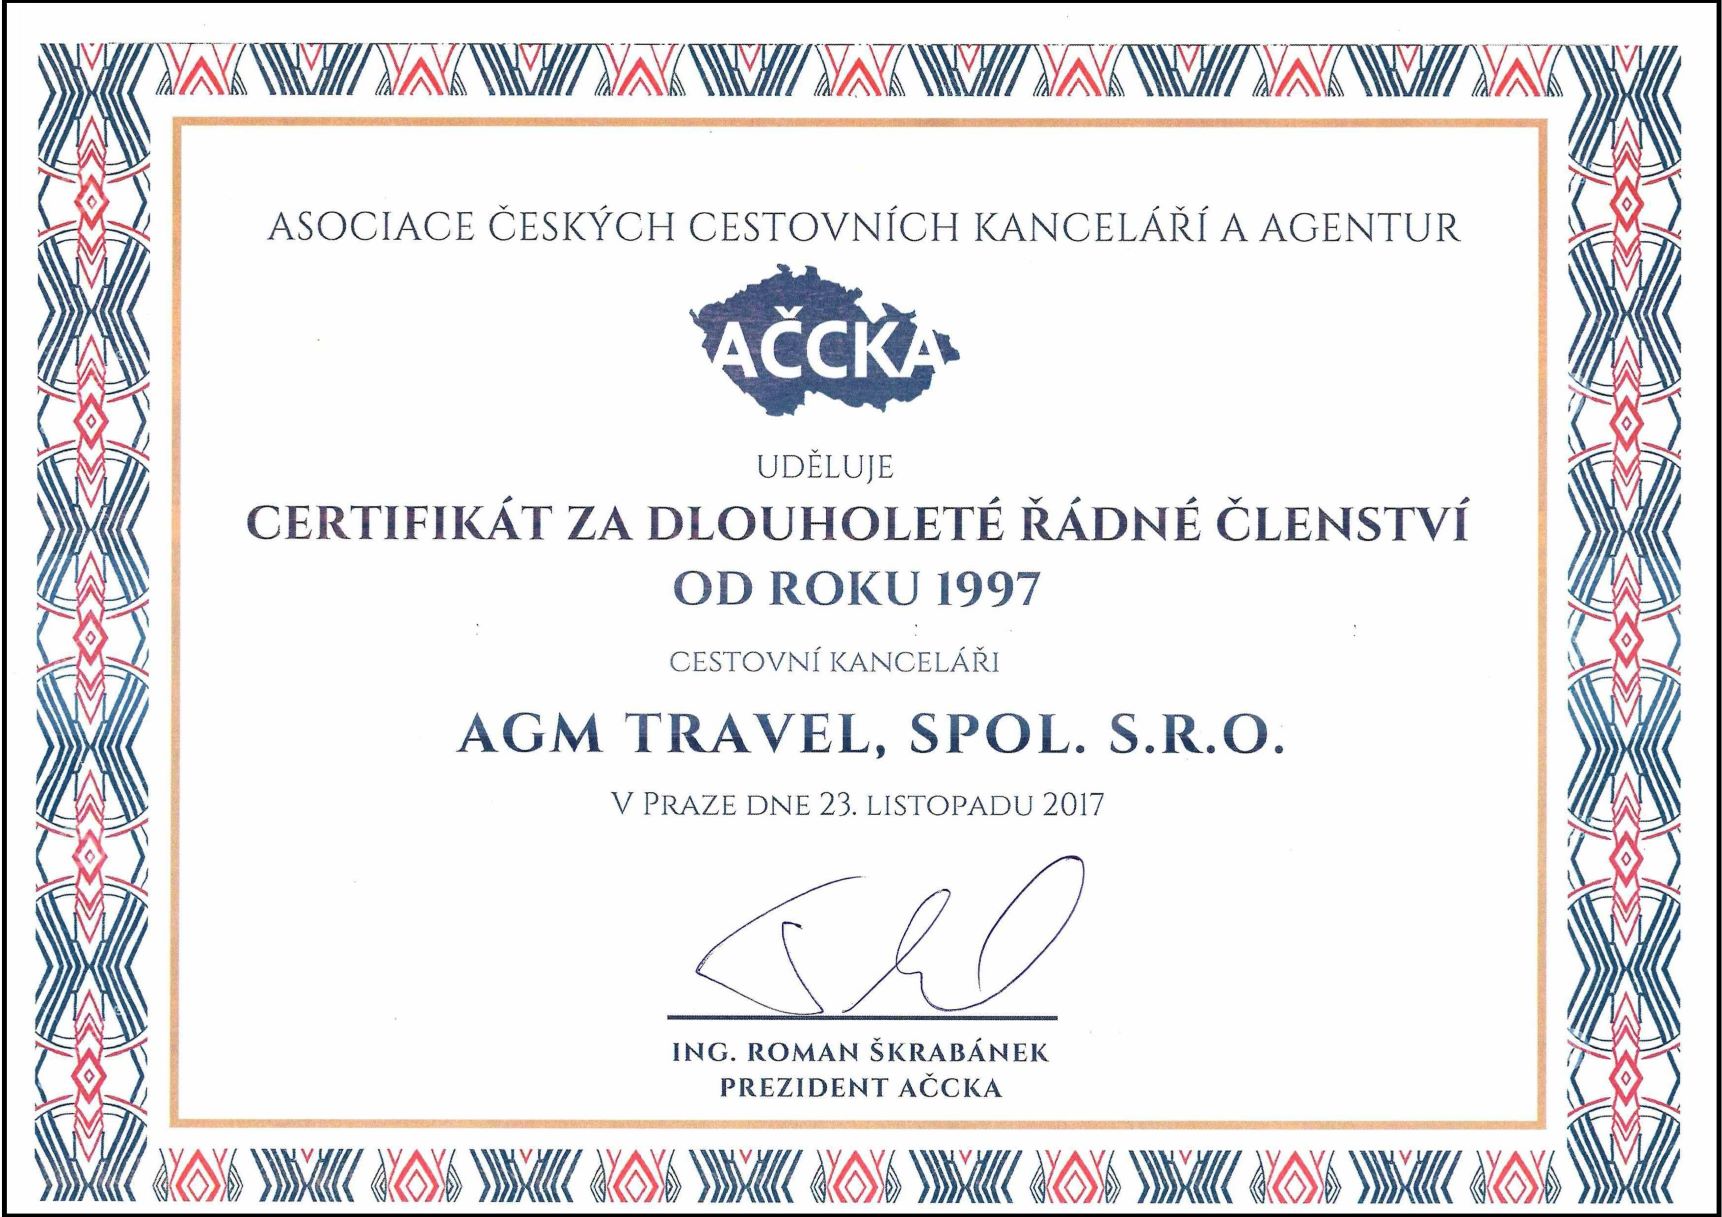 Dlouholete-clenstvi-ACCKA-certifikat-AGM-TRAVEL-